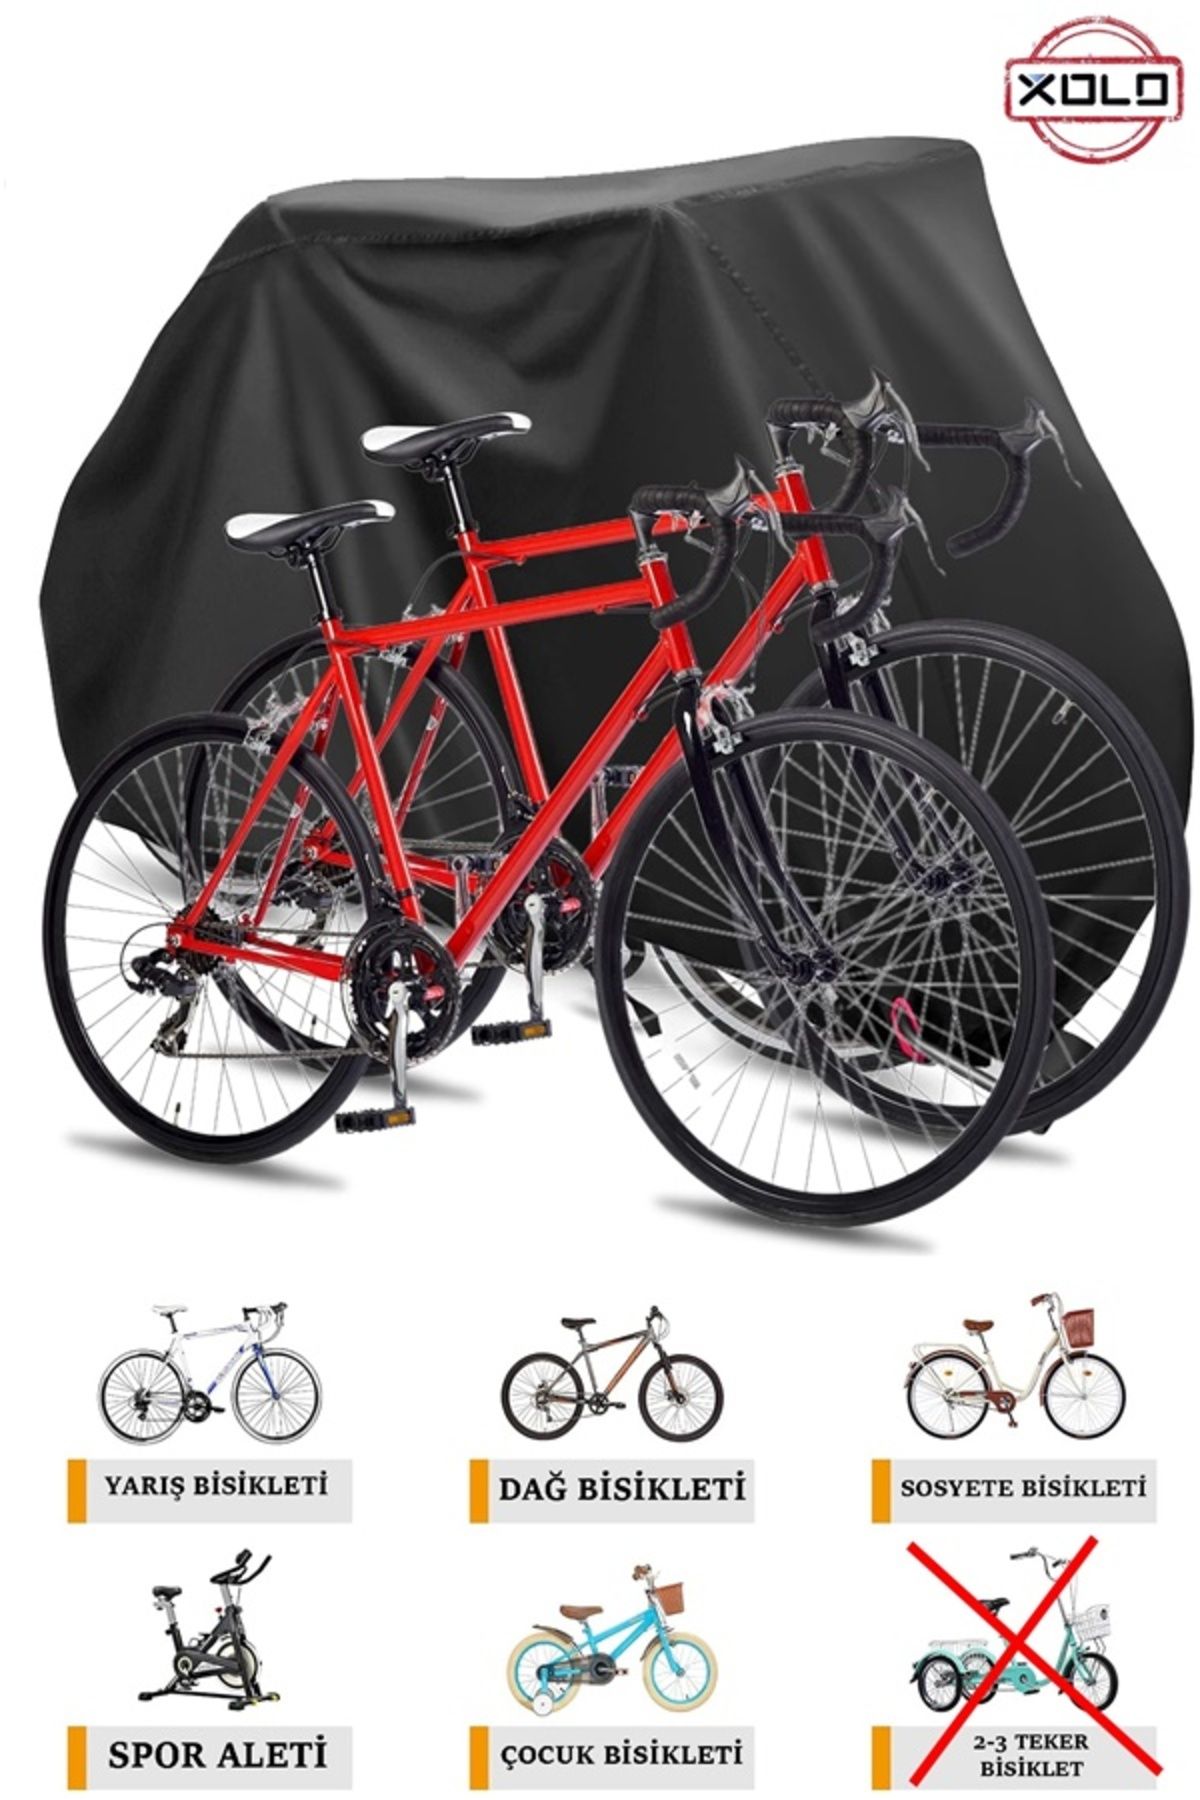 Xolo Bisiklet Brandası Su Geçirmez Tüm Modellerle Uyumlu Bisiklet Örtü Çadır Siyah-Gri Renk Seçenekli